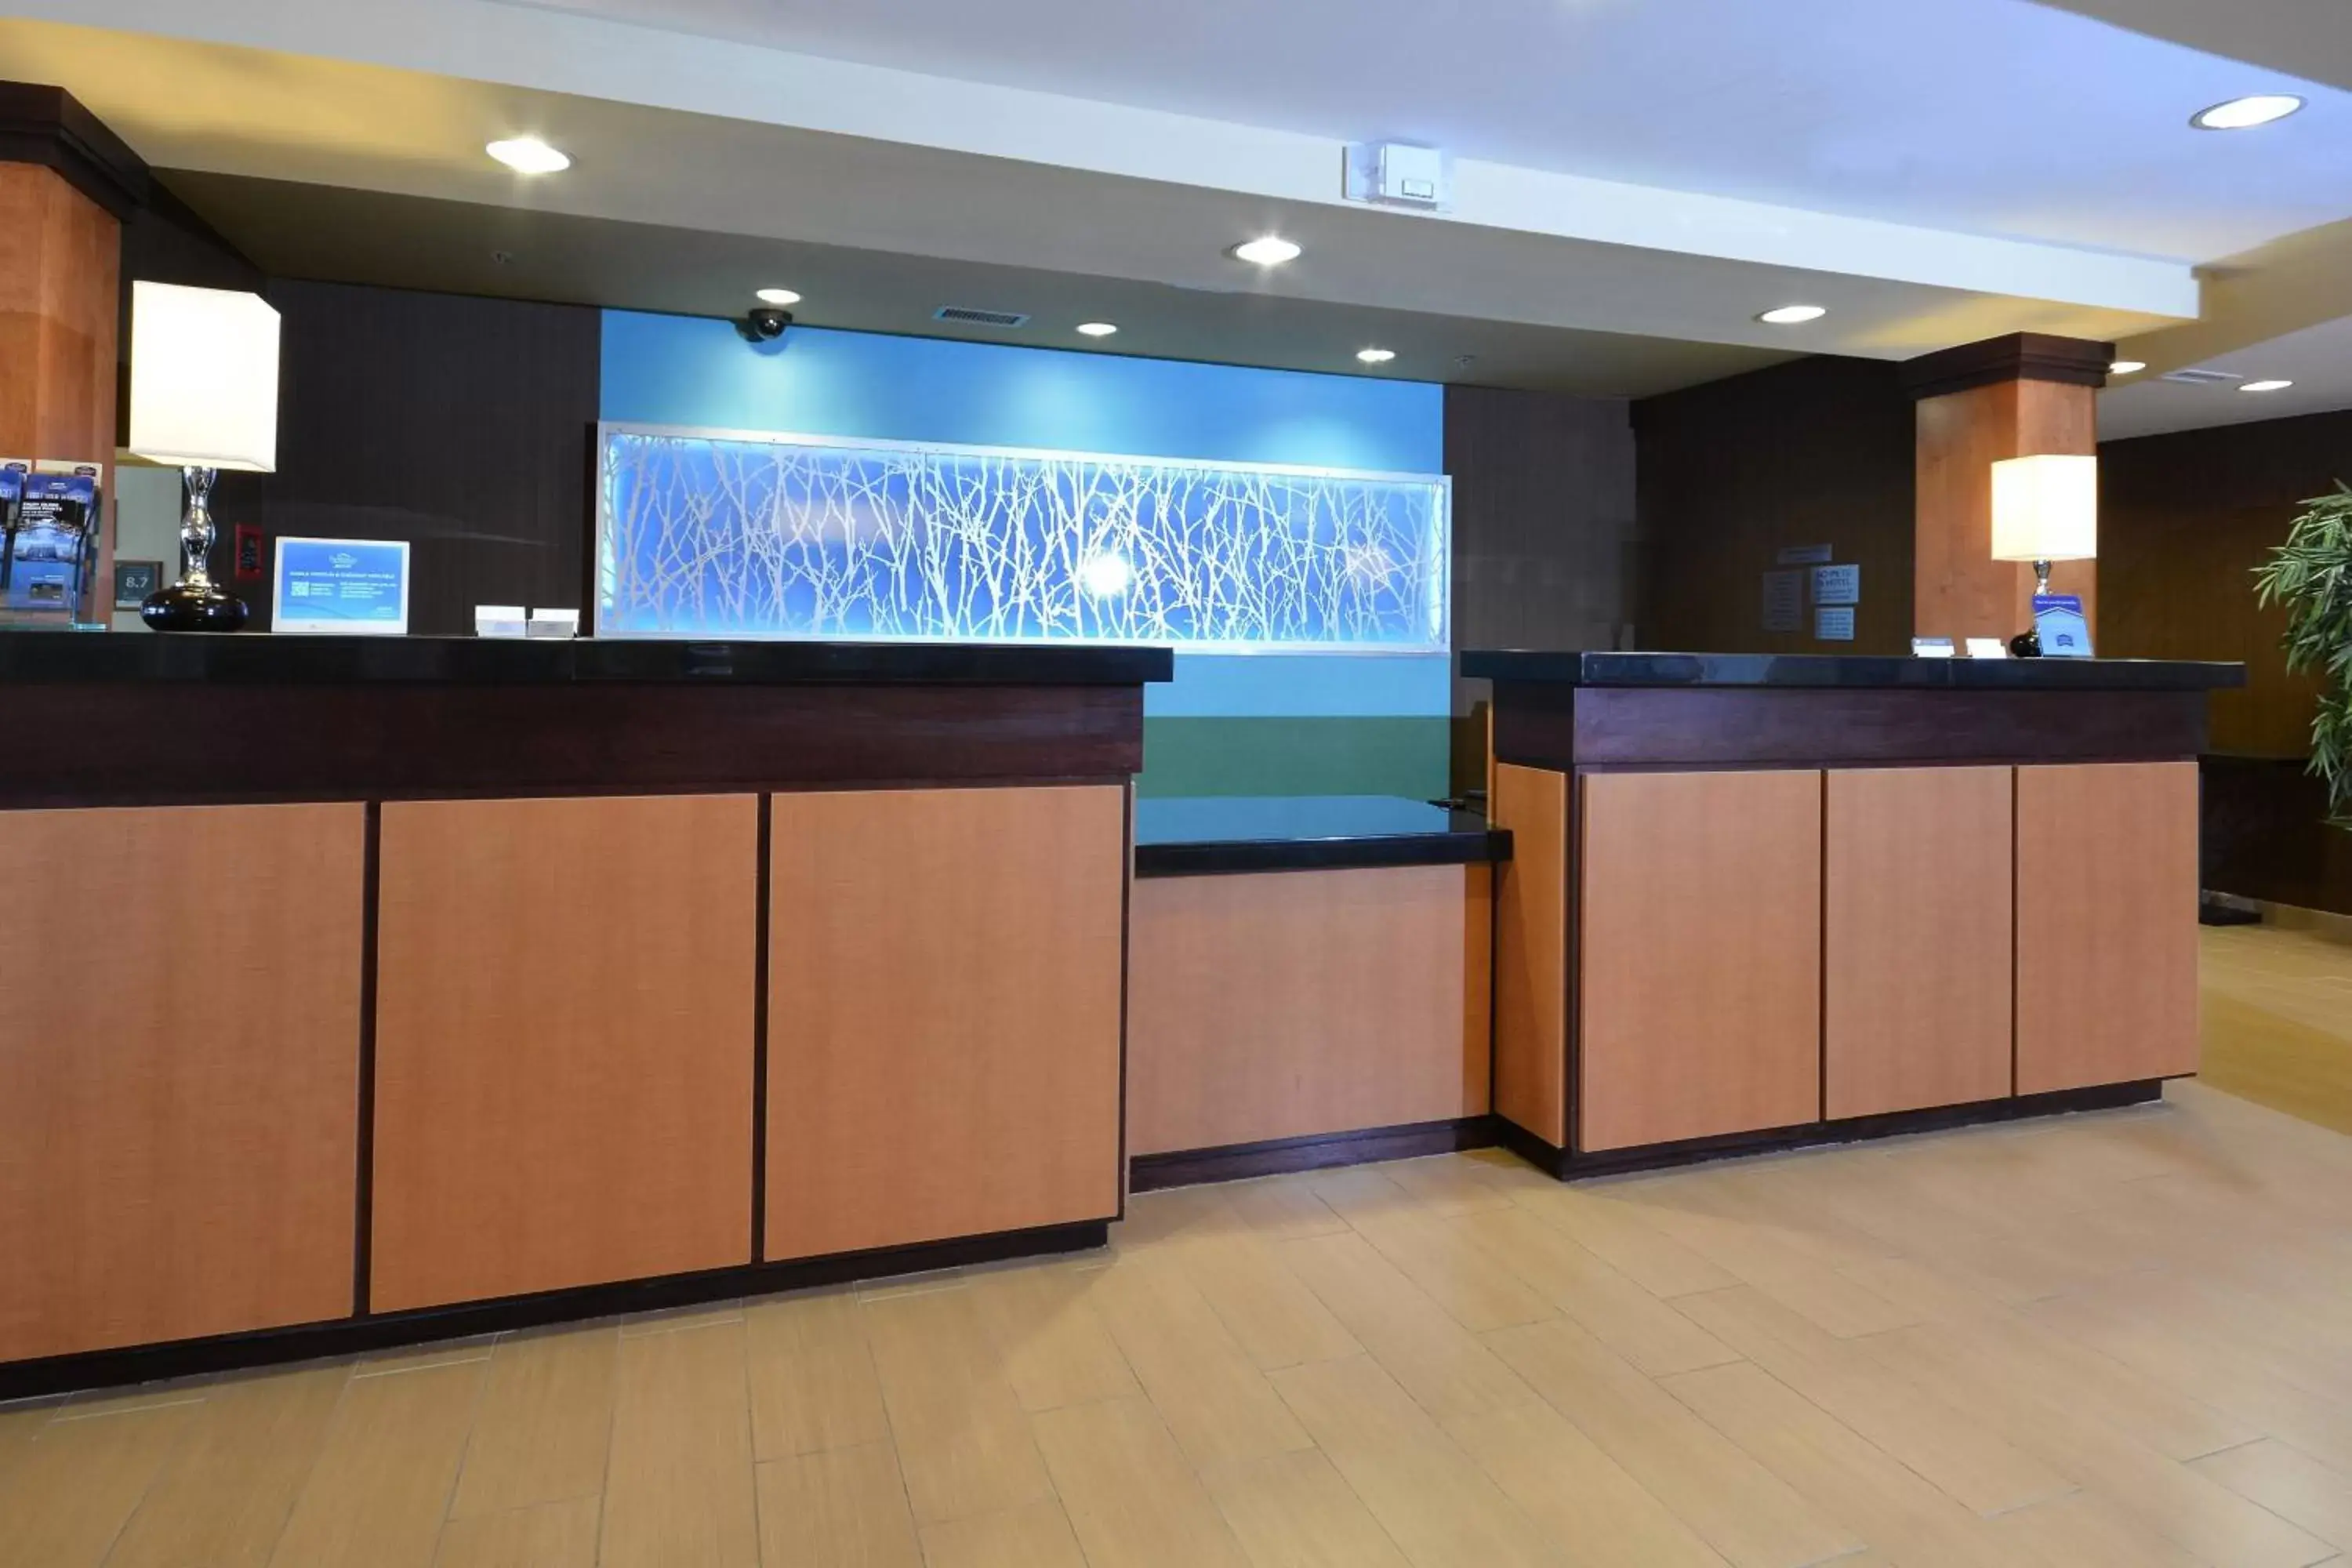 Lobby or reception, Lobby/Reception in Fairfield Inn & Suites Wytheville